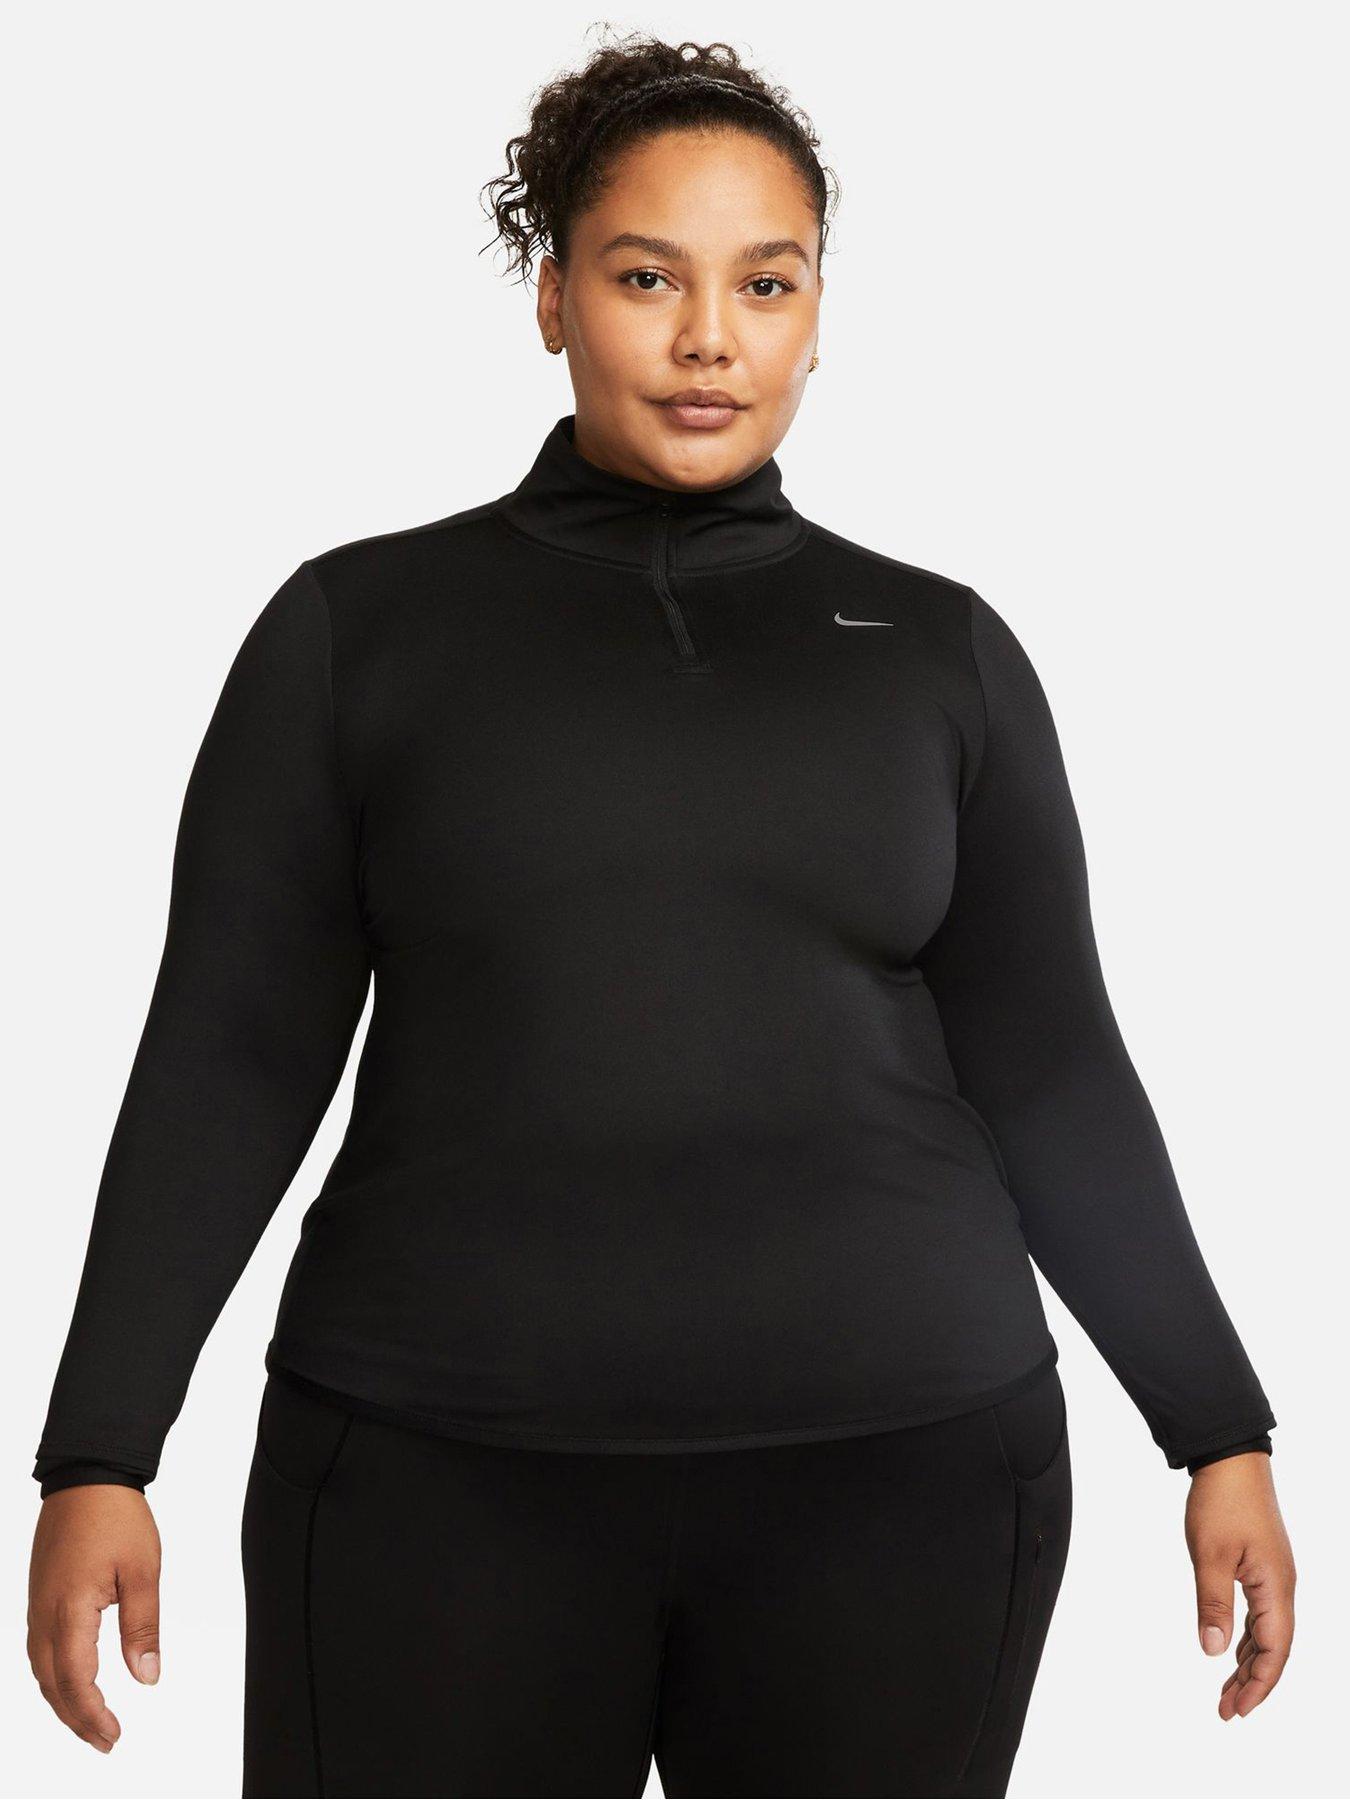 Women's Nike Tops & T Shirts, Zip Up, Long Sleeve